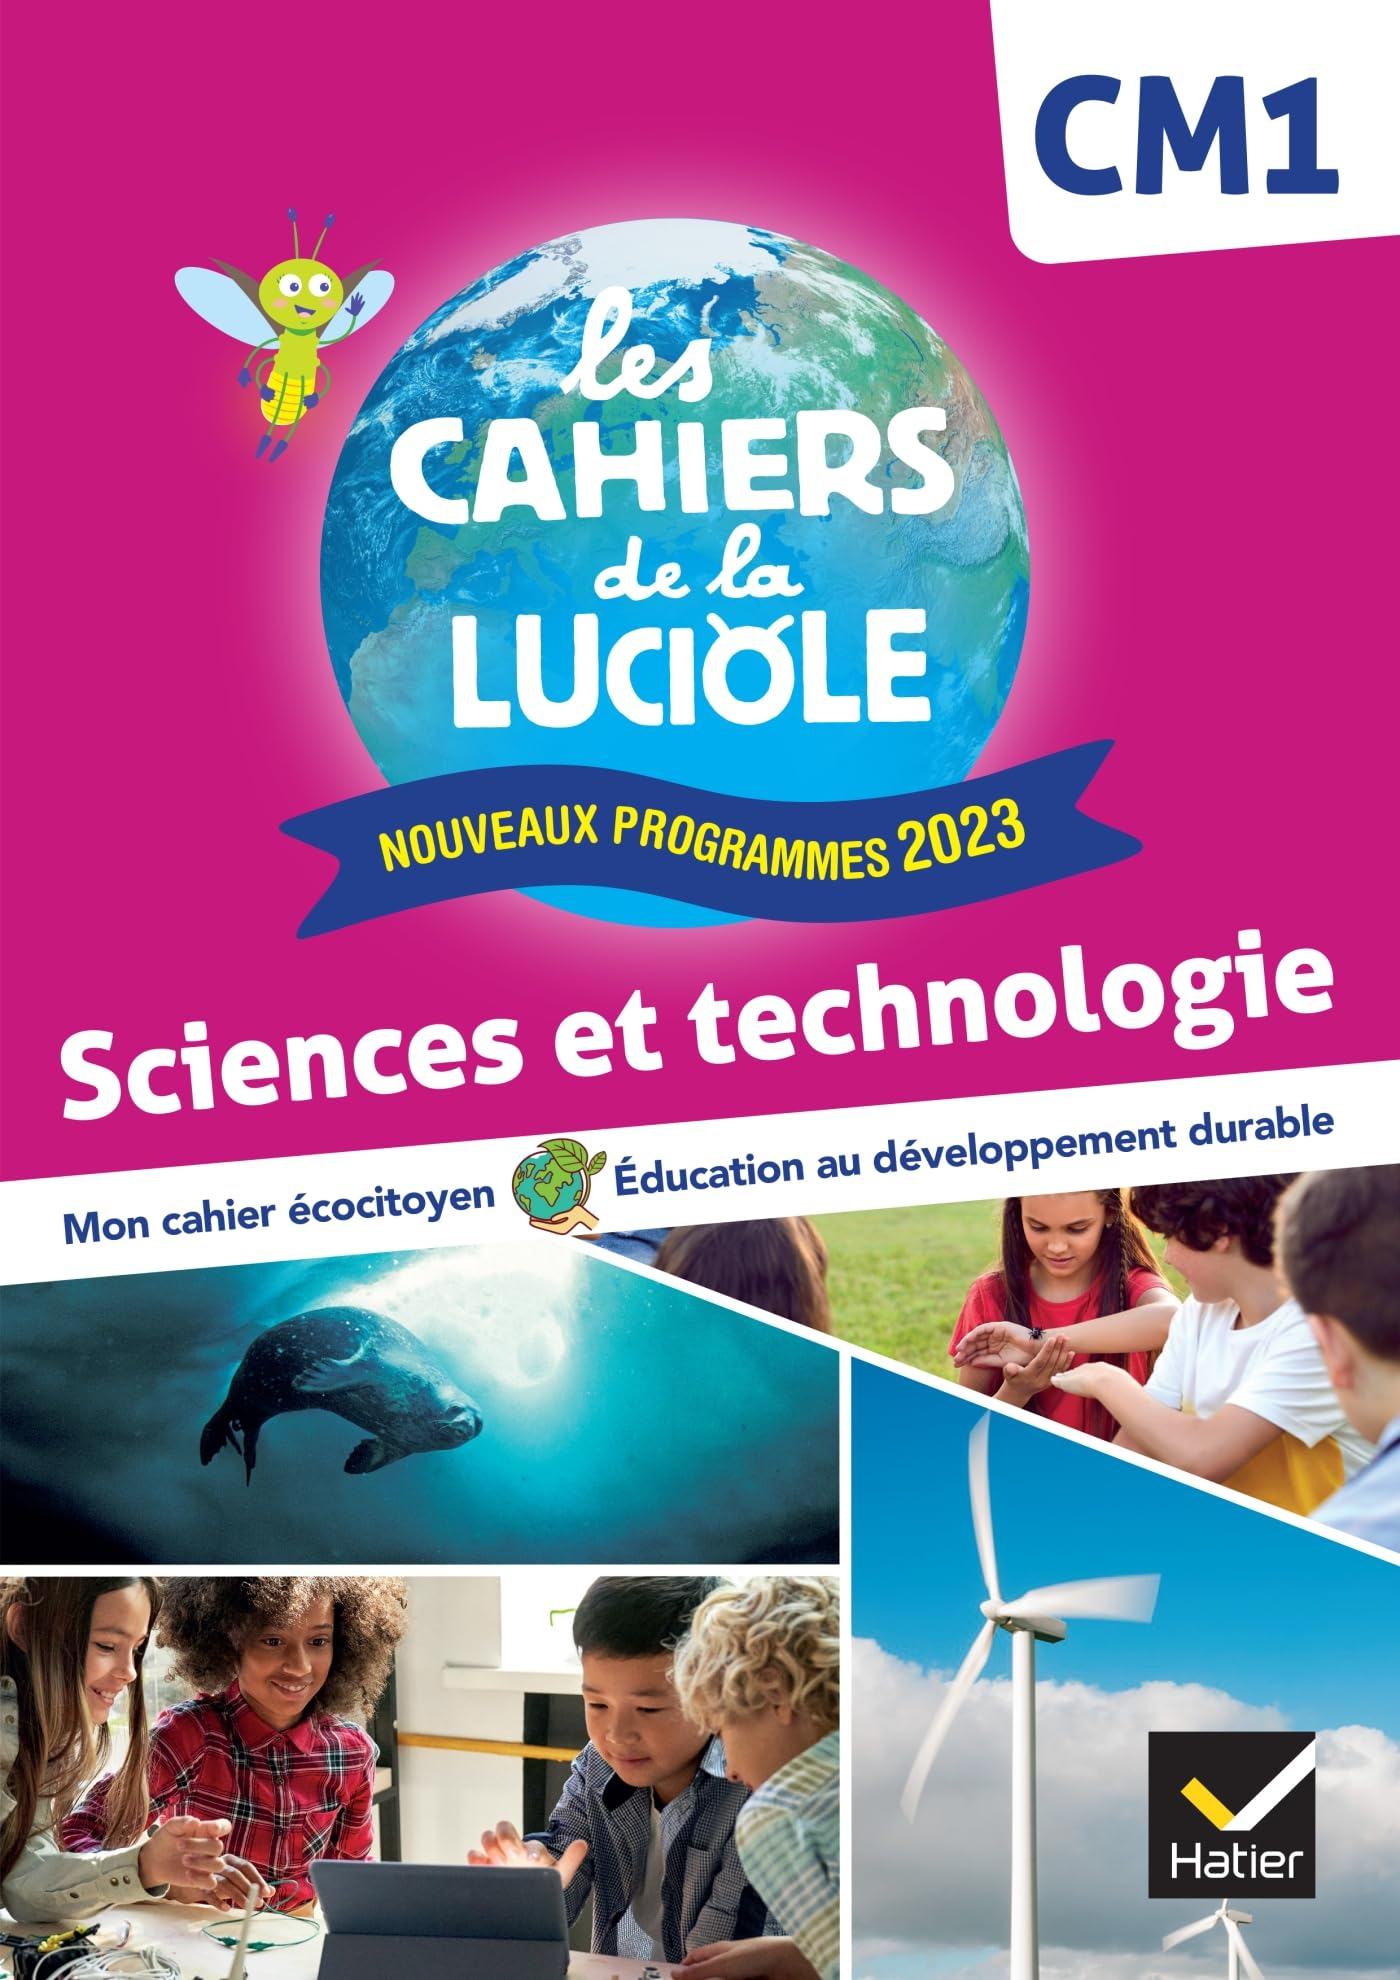 Sciences et technologie CM1 : mon cahier écocitoyen, éducation au développement durable : nouveaux p